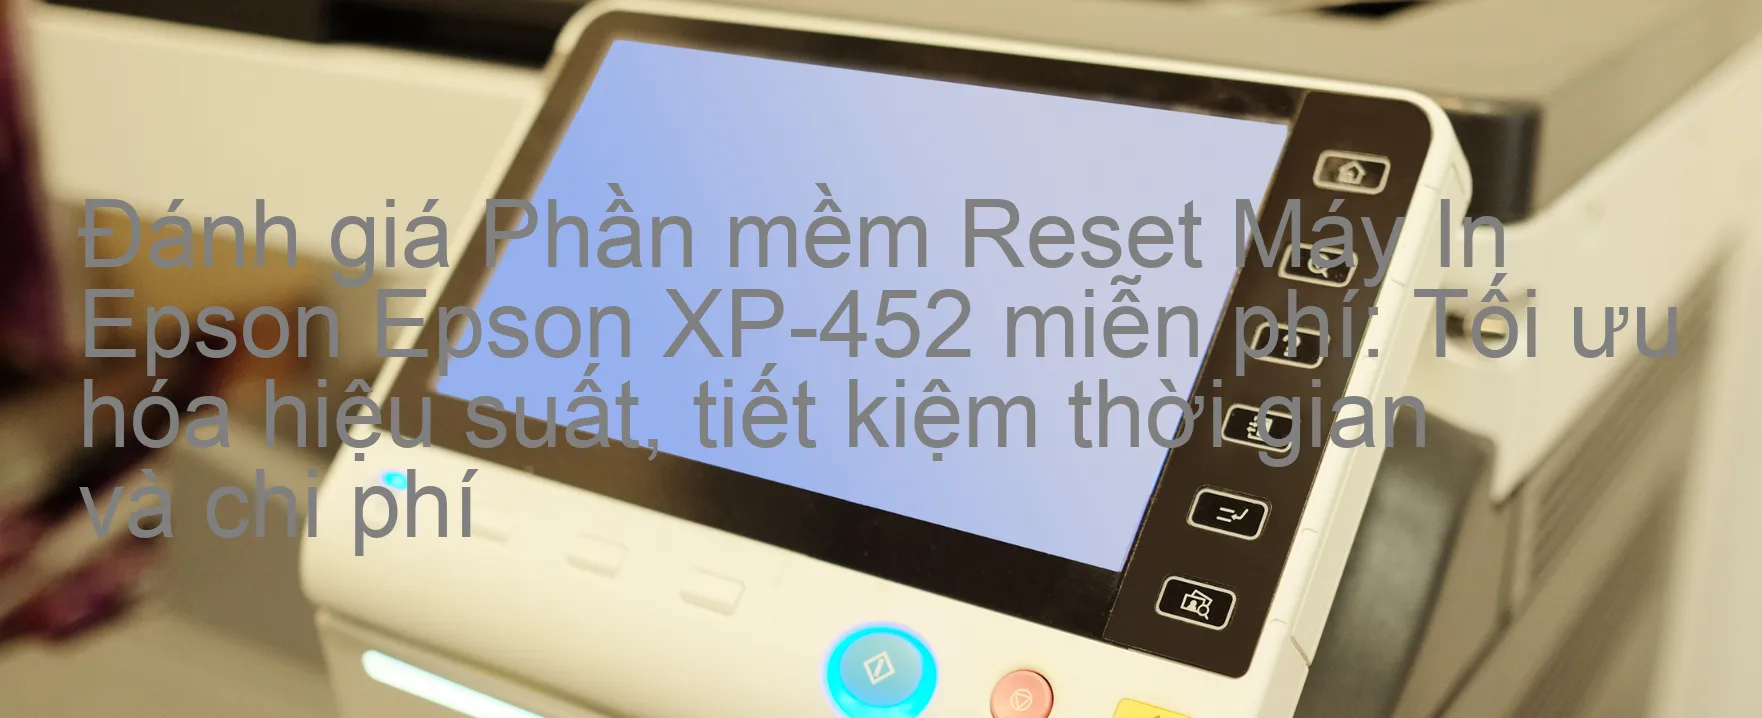 Đánh Giá phần mềm Reset Epson XP-452 Miễn Phí